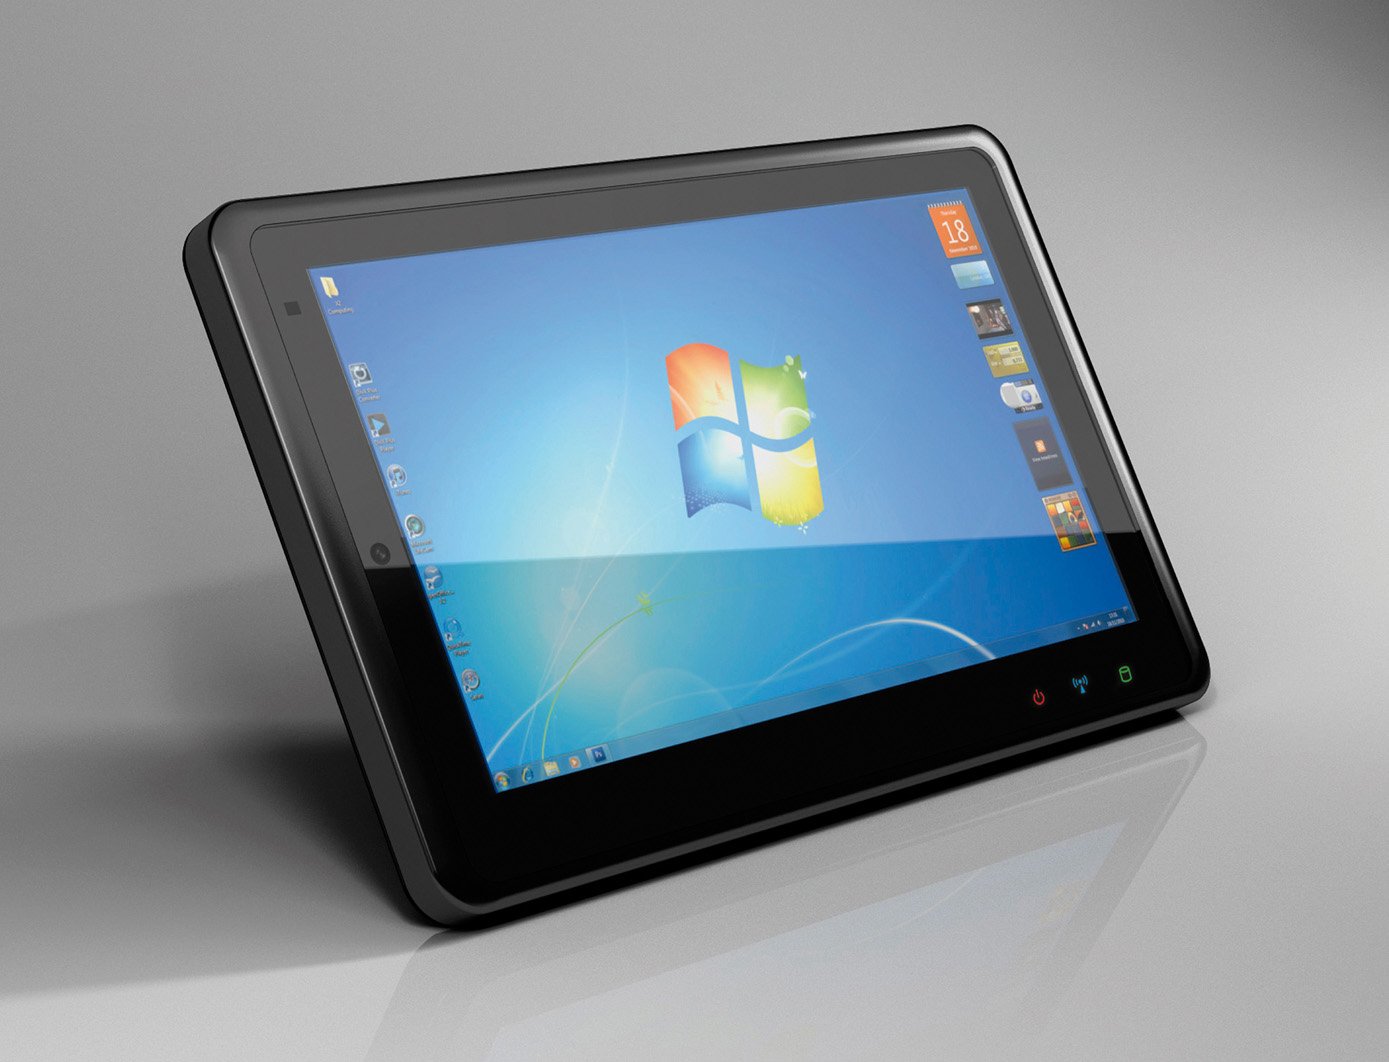 iTablet windows 7 es anunciada #CES